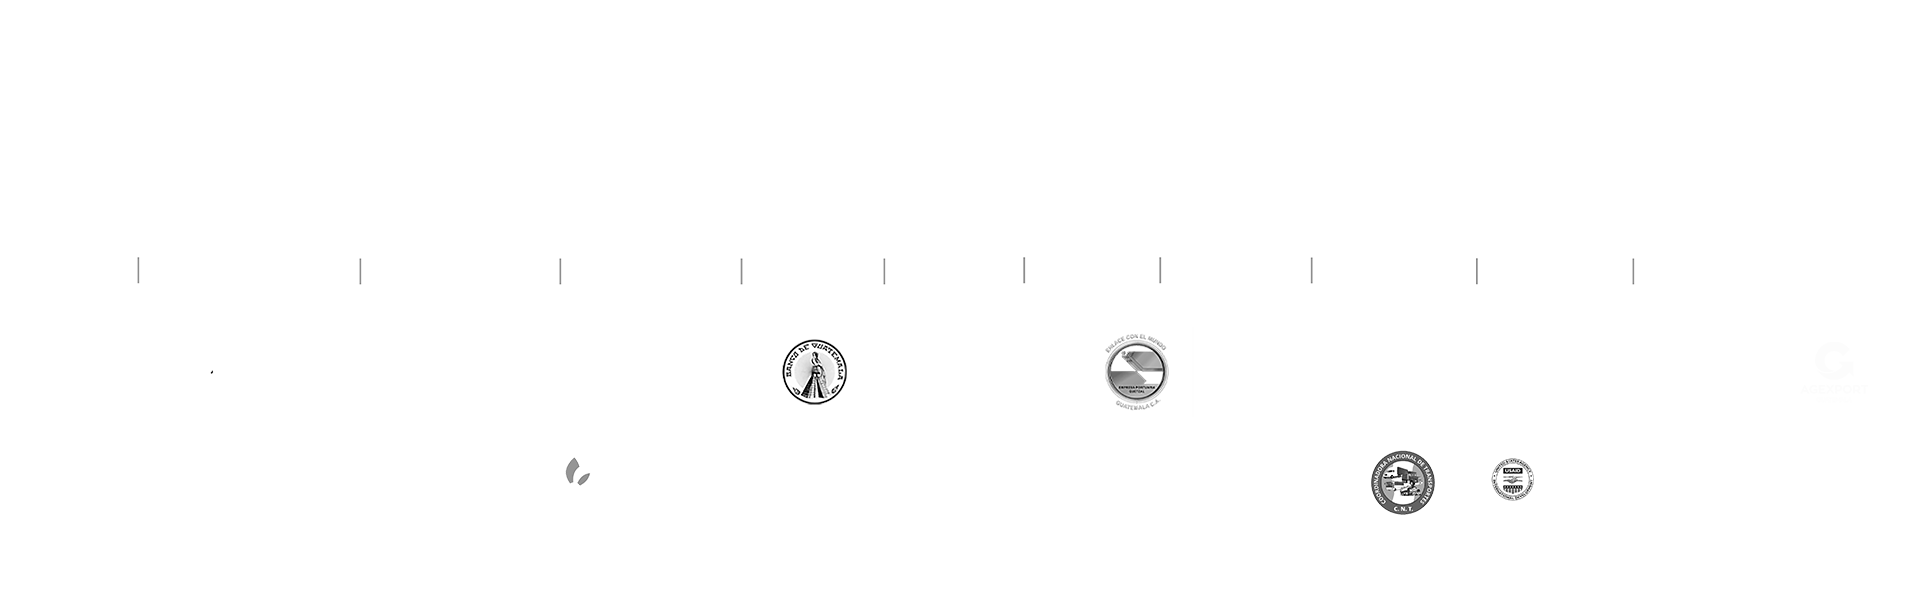 Instituciones Guatemala No Se Detiene